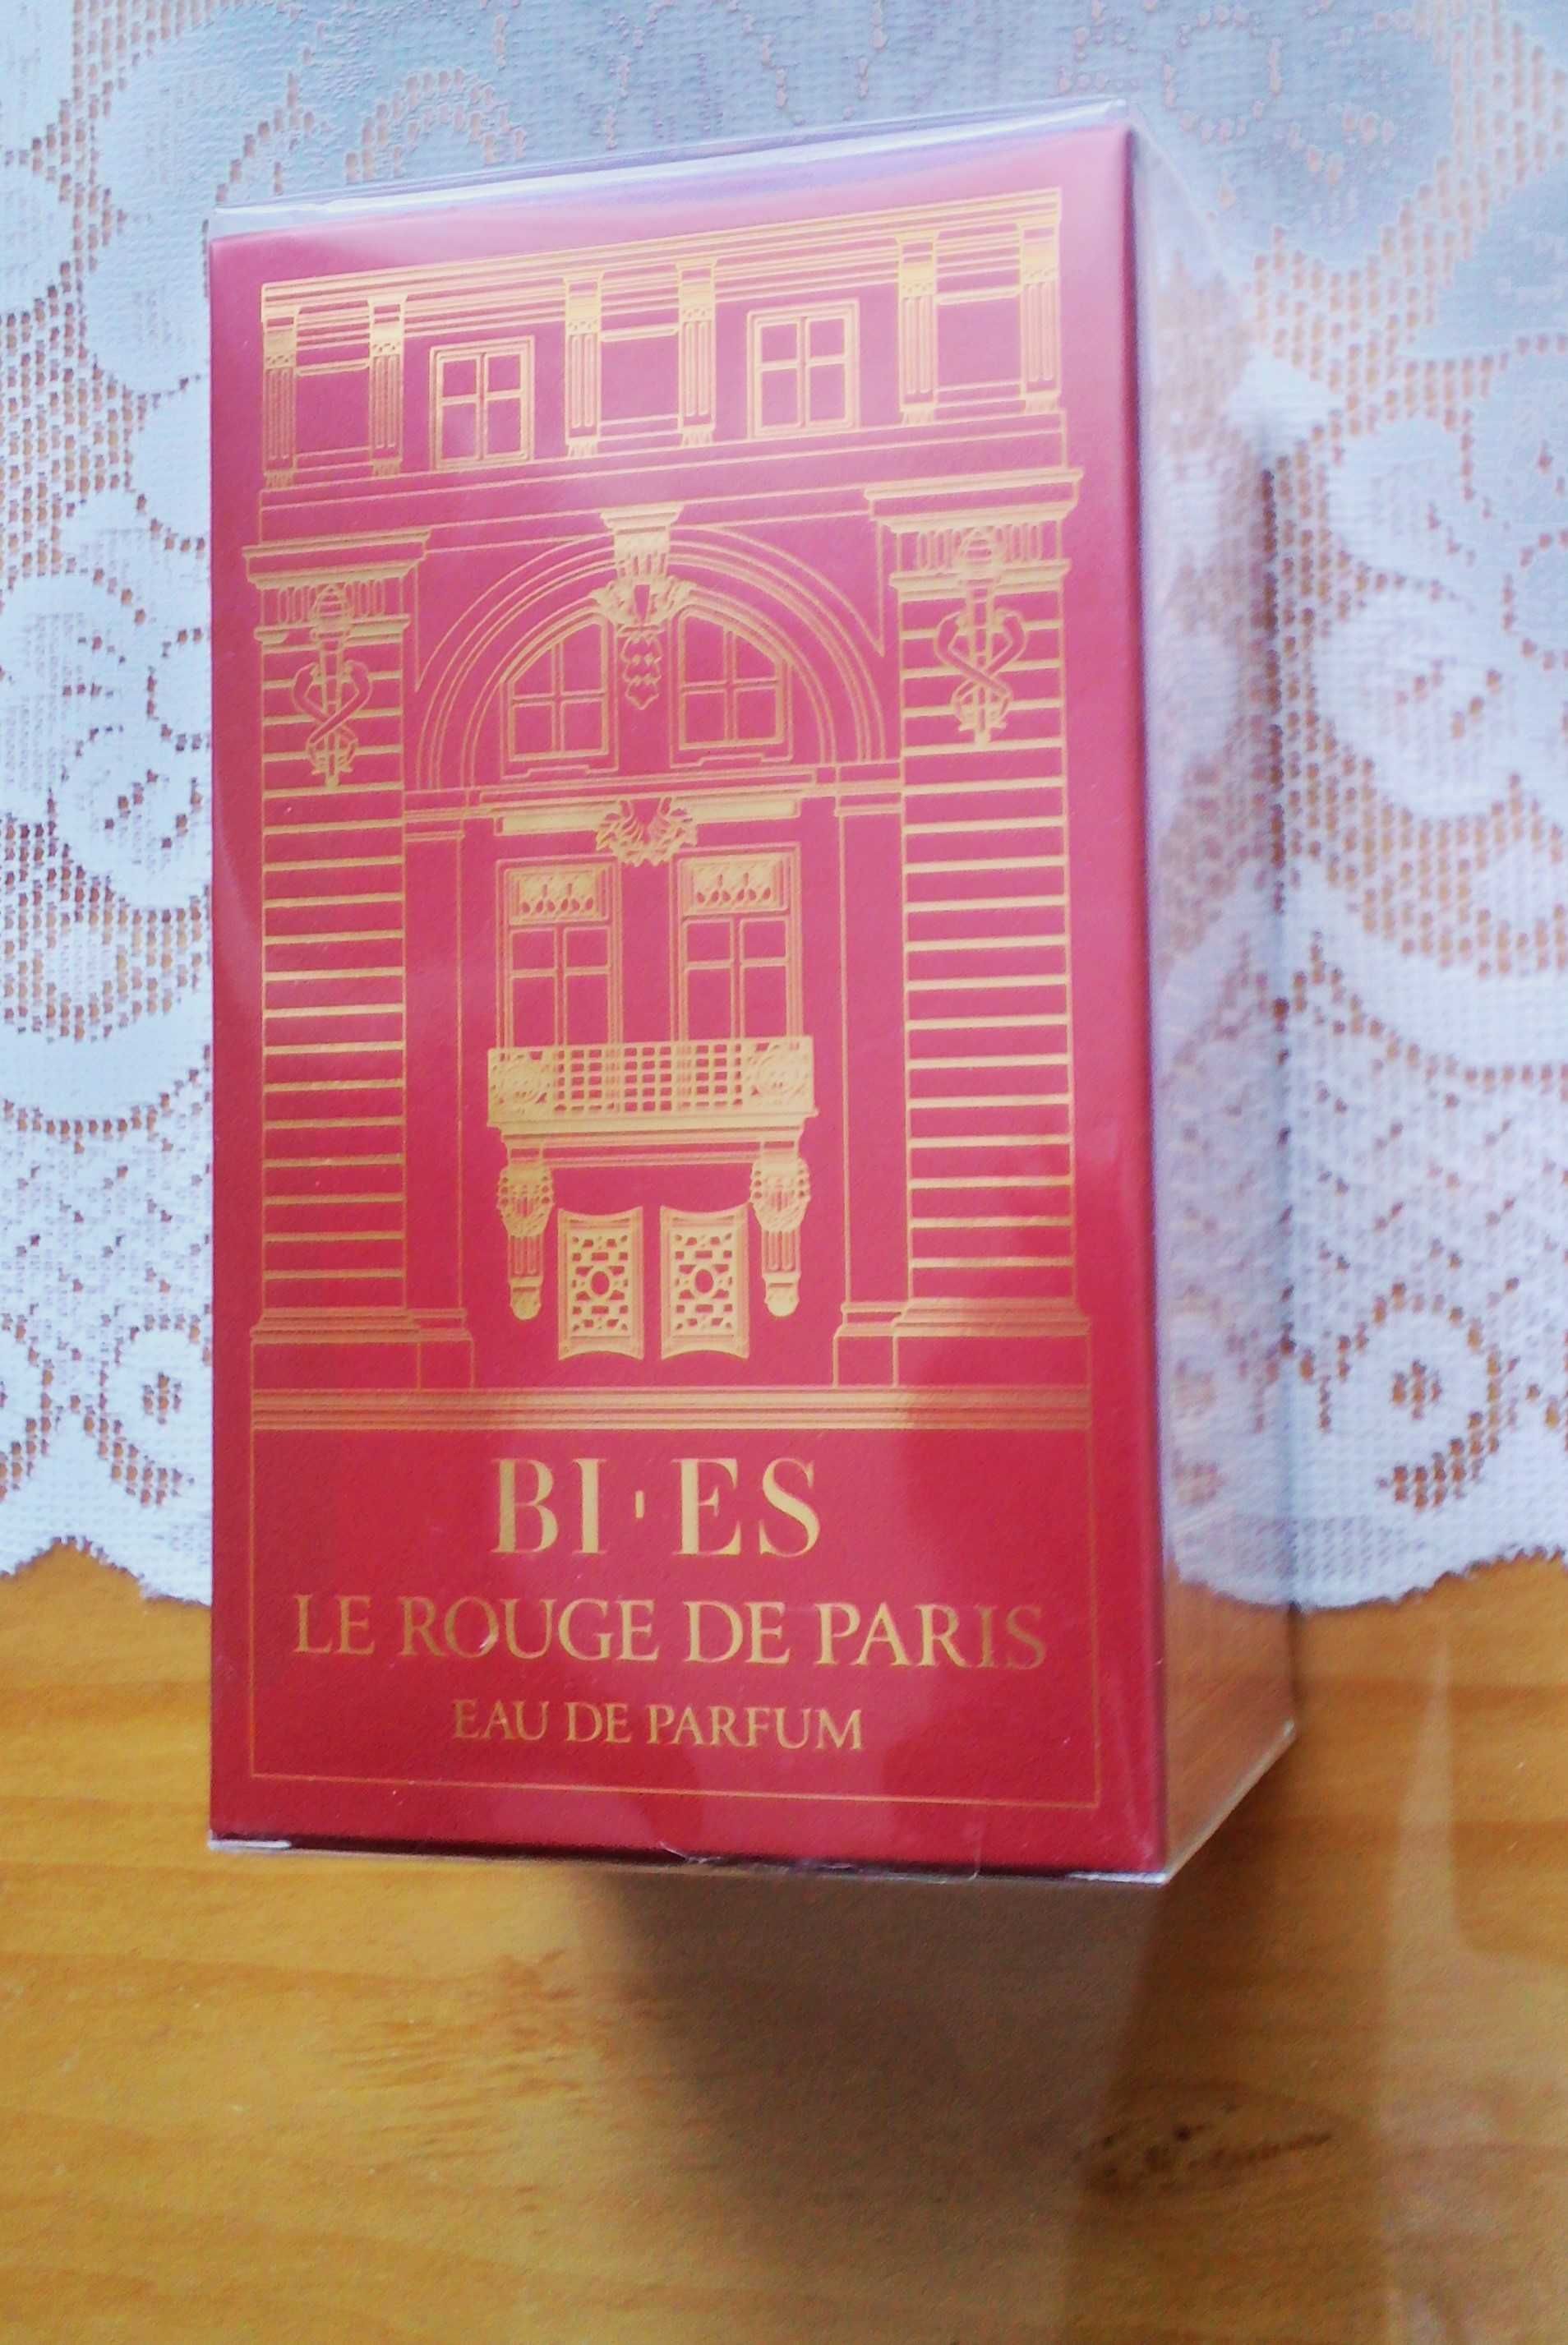 Le Rouge de Paris marki Bi-ES